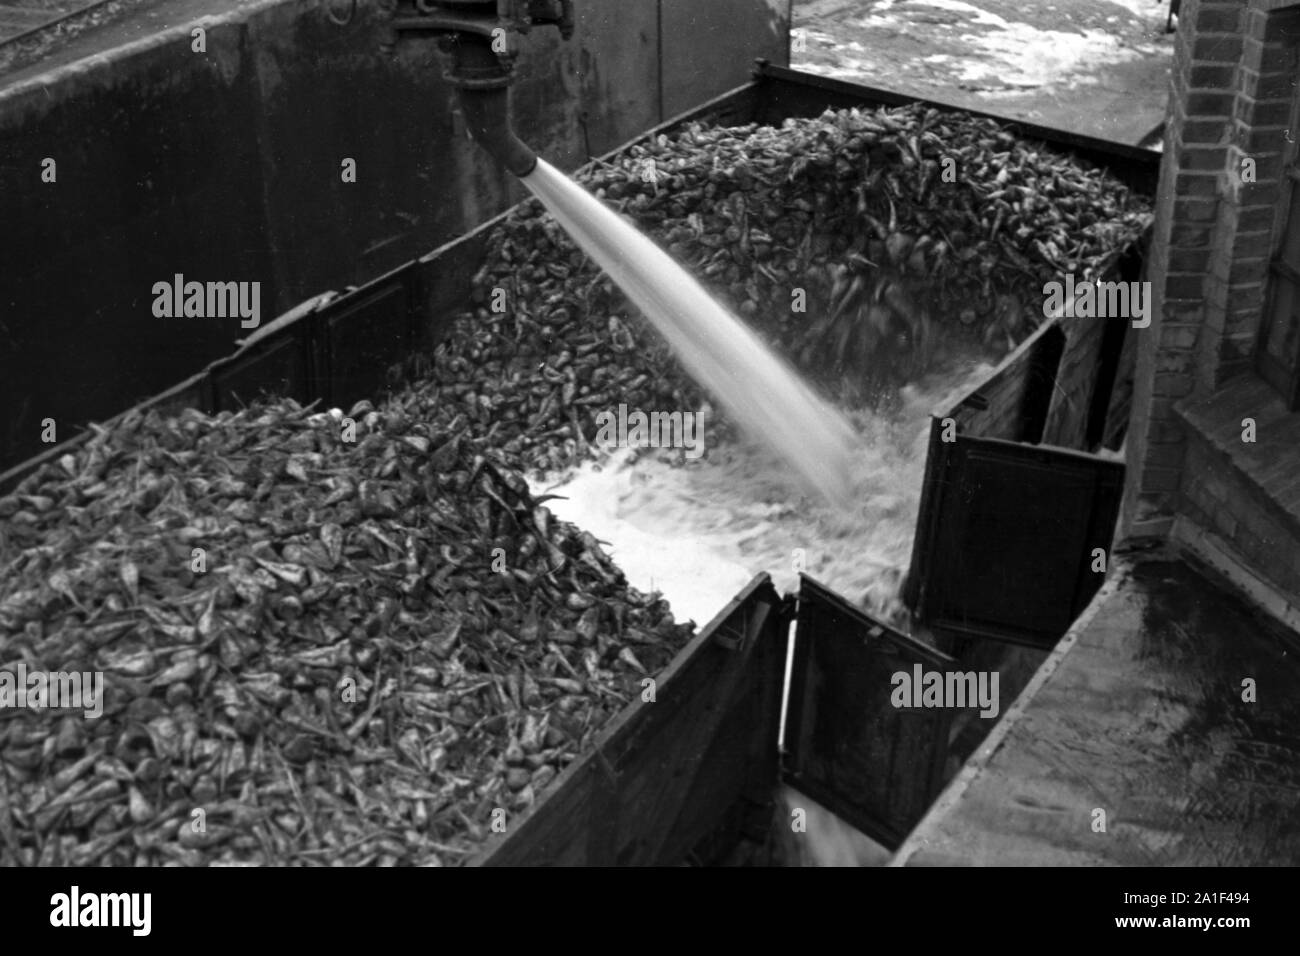 Dans Arbeitsalltag der Zuckerfabrik Zeitz, DDR, 1950er. La vie de travail à la raffinerie de sucre dans la région de Zeitz, RDA, 1950. Banque D'Images